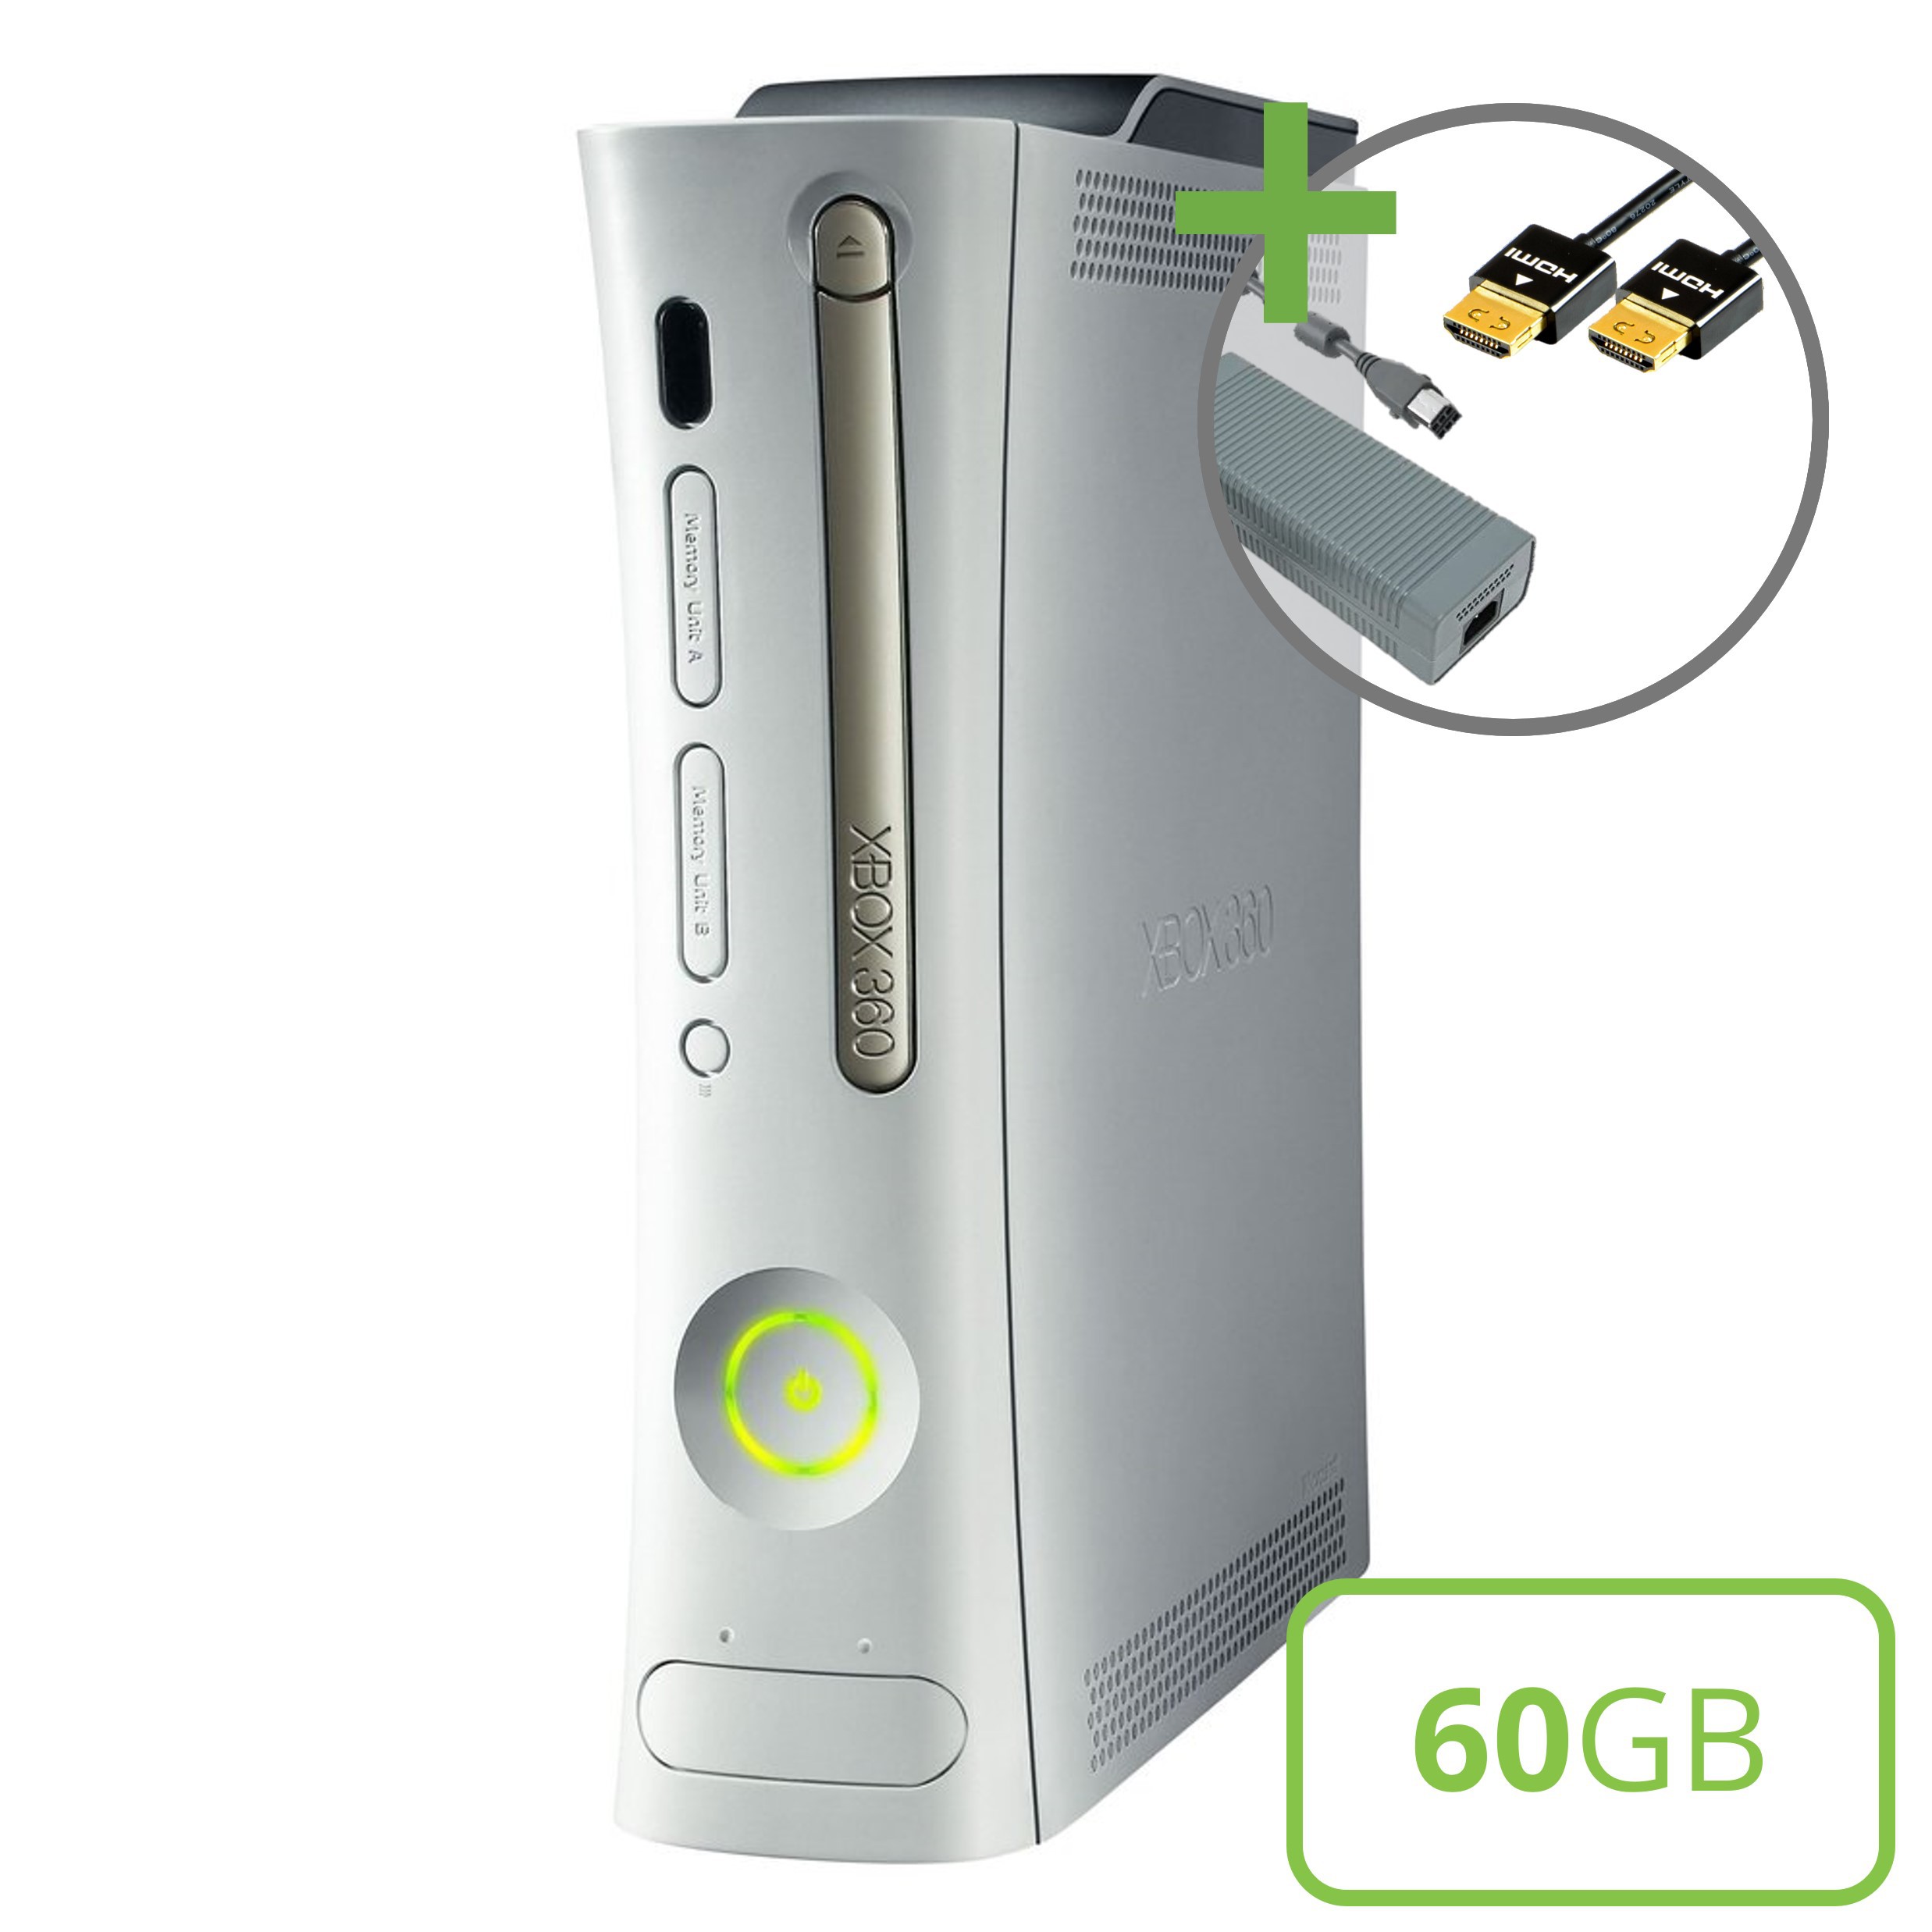 Microsoft Xbox 360 Premium Console (HDMI) - 60GB - Xbox 360 Hardware